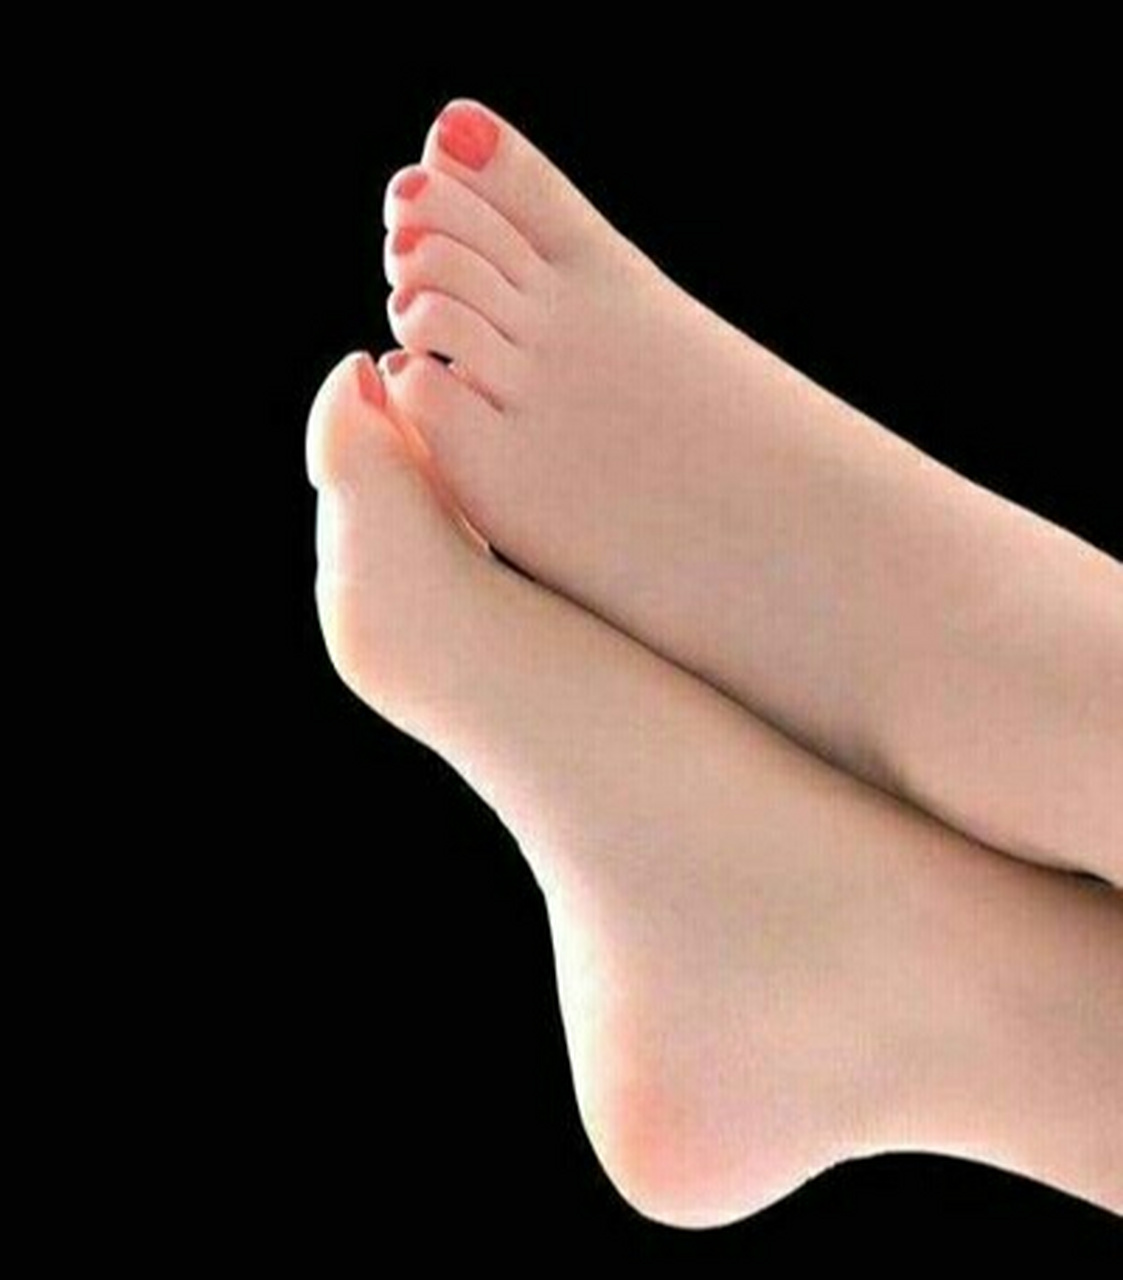 看脚的形状 一般来说命中有财的人的脚掌整体来看会比较的宽大,厚实